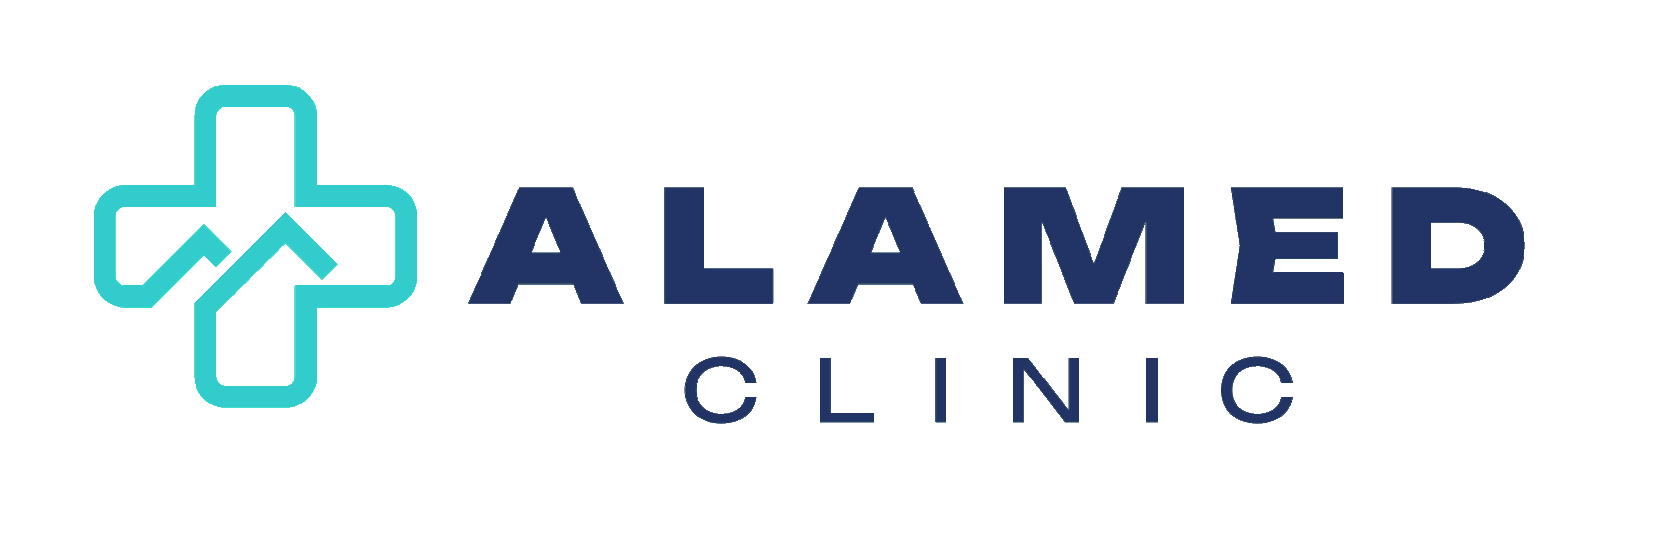 Клиника Alamed